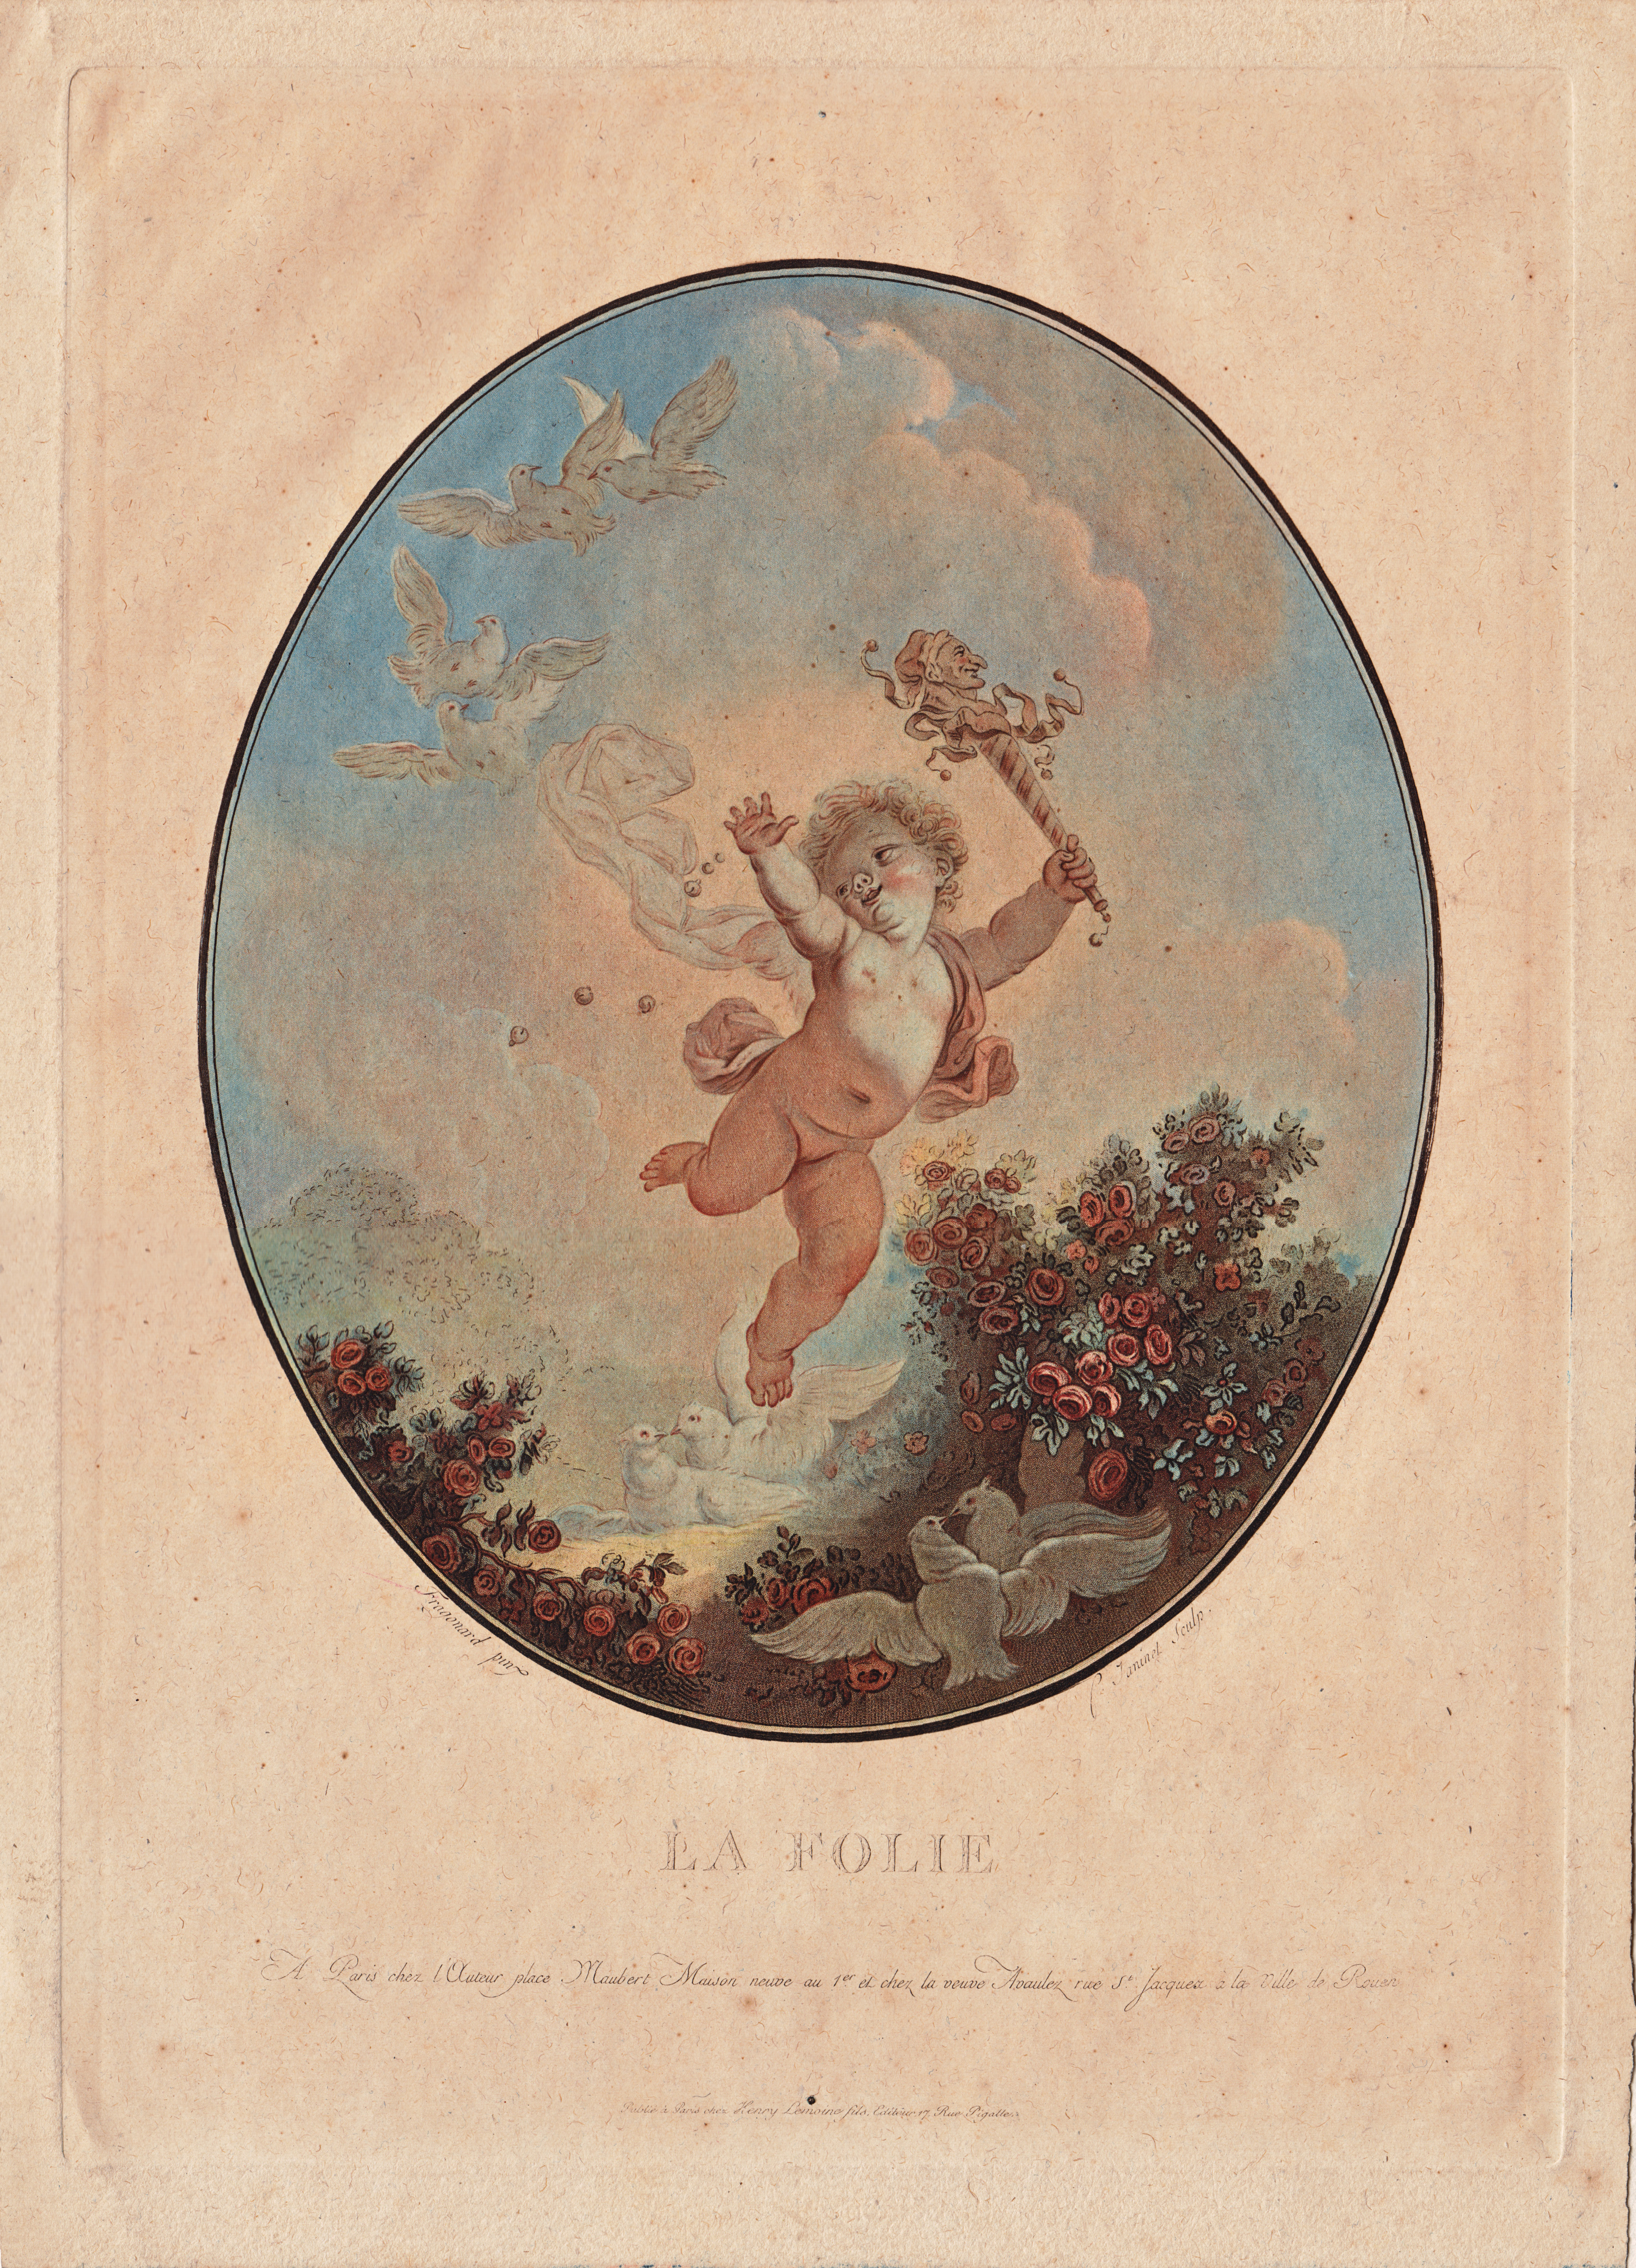 Jean-François Janinet, La Folie, color engraving and aquatint, 1777